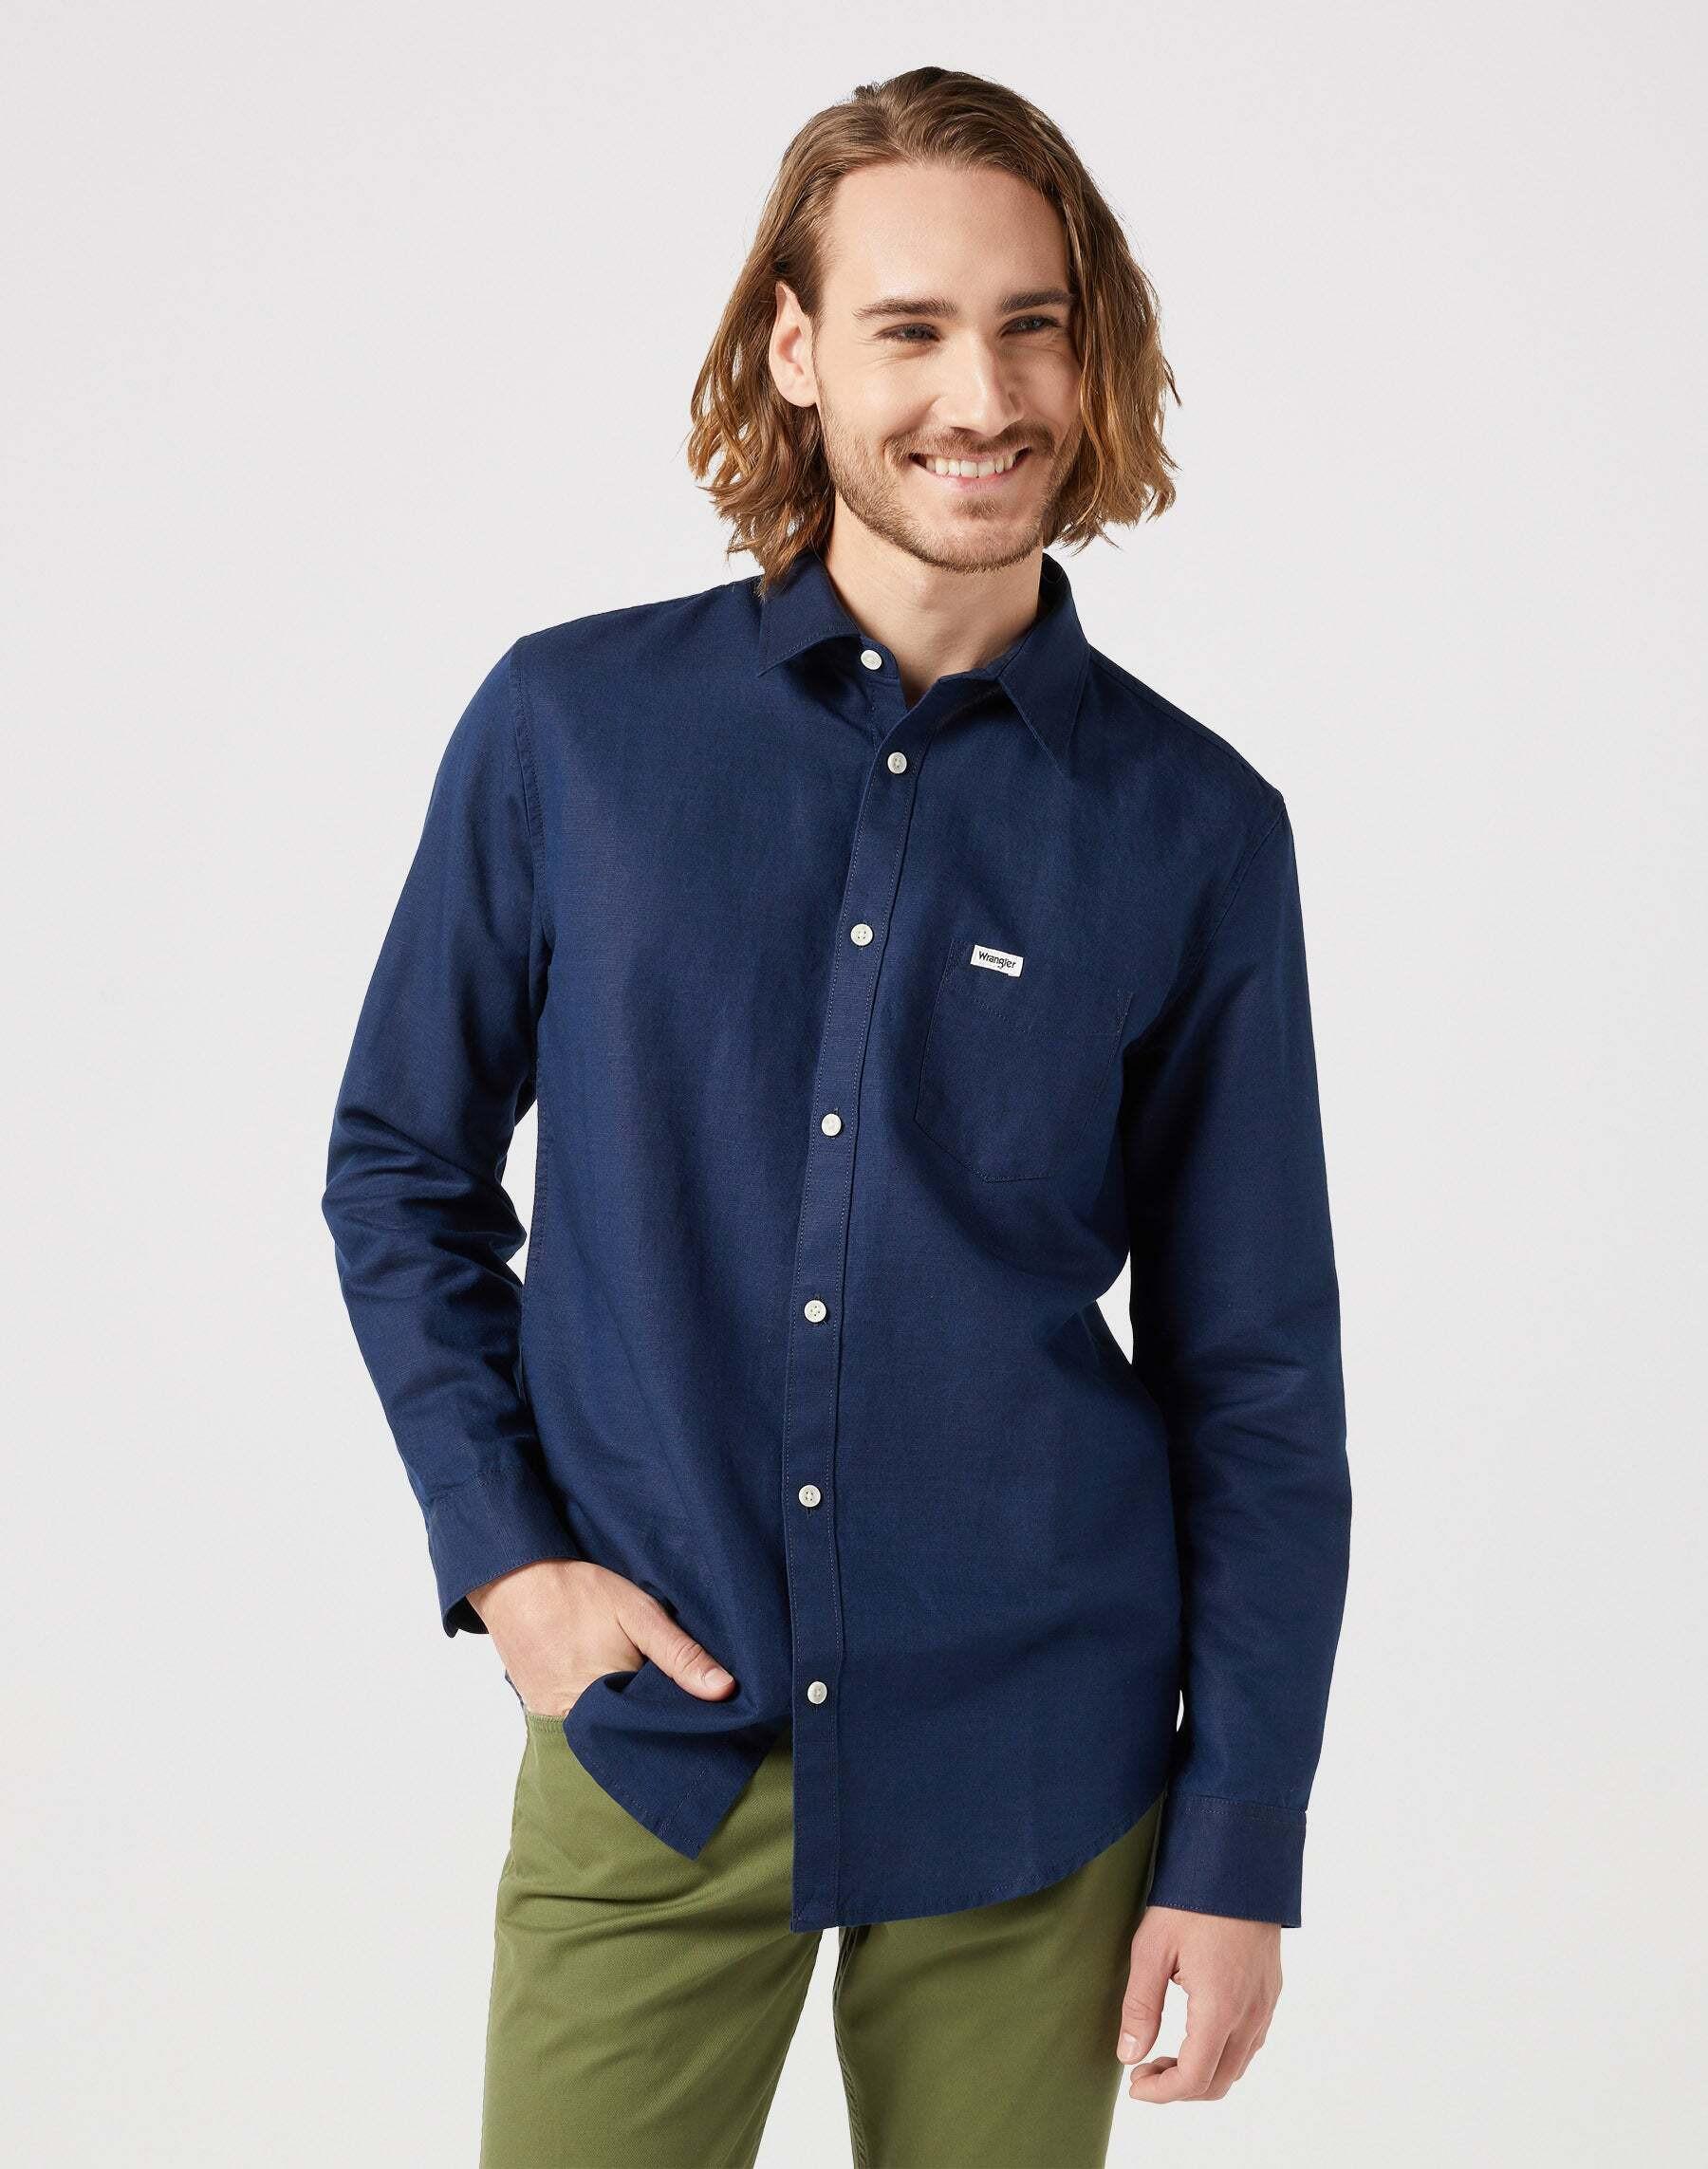 Hemden One Pocket Shirt Herren Blau M von Wrangler